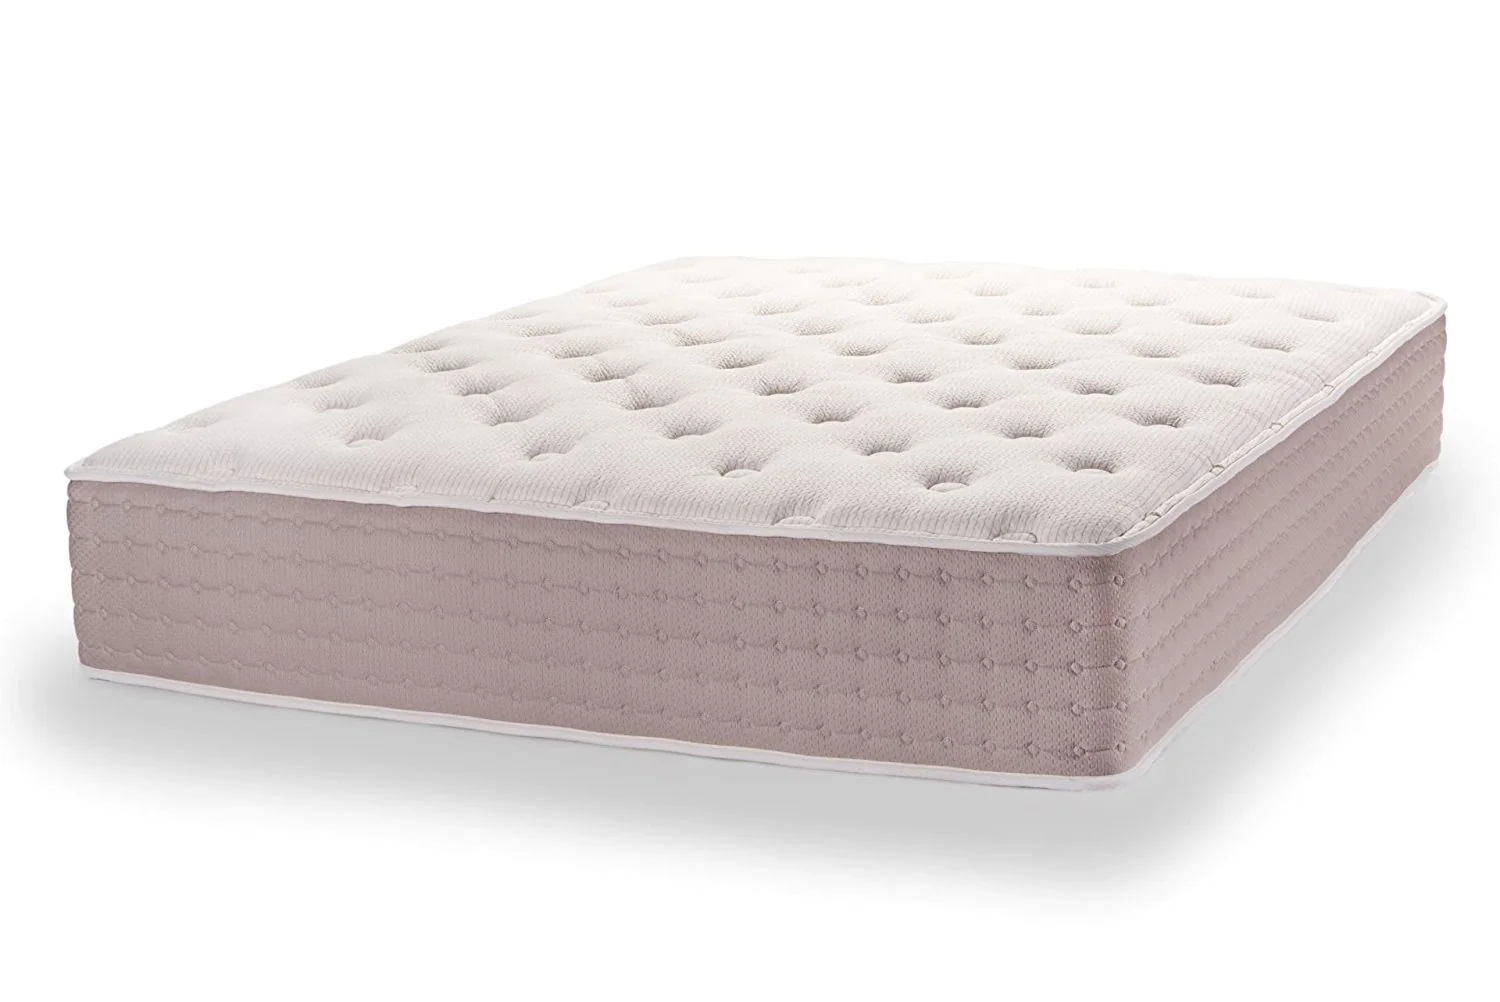 dunlop mattress 4 inch price